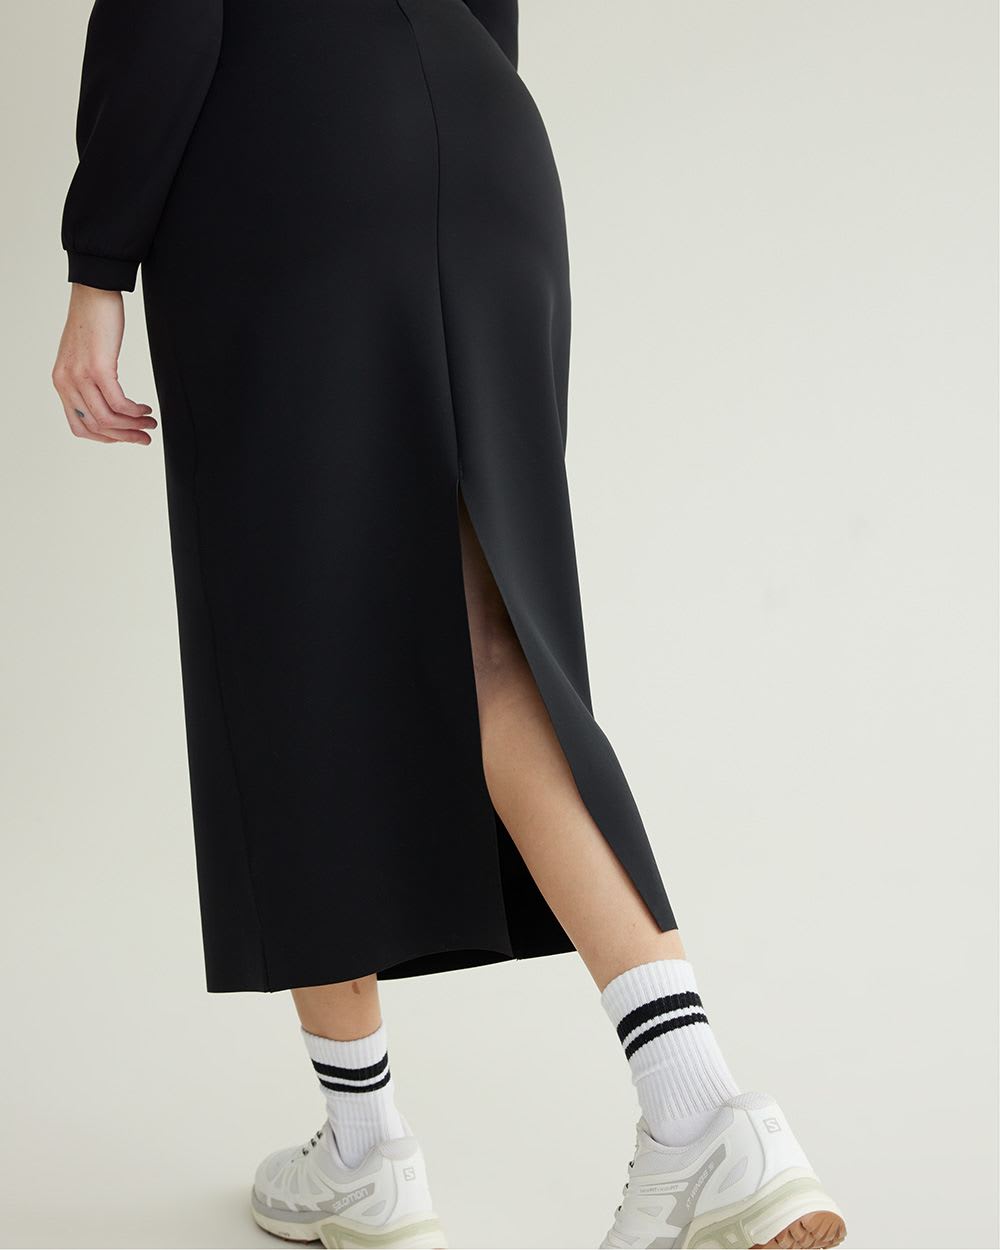 Scuba Ankle-Length Skirt - Hyba